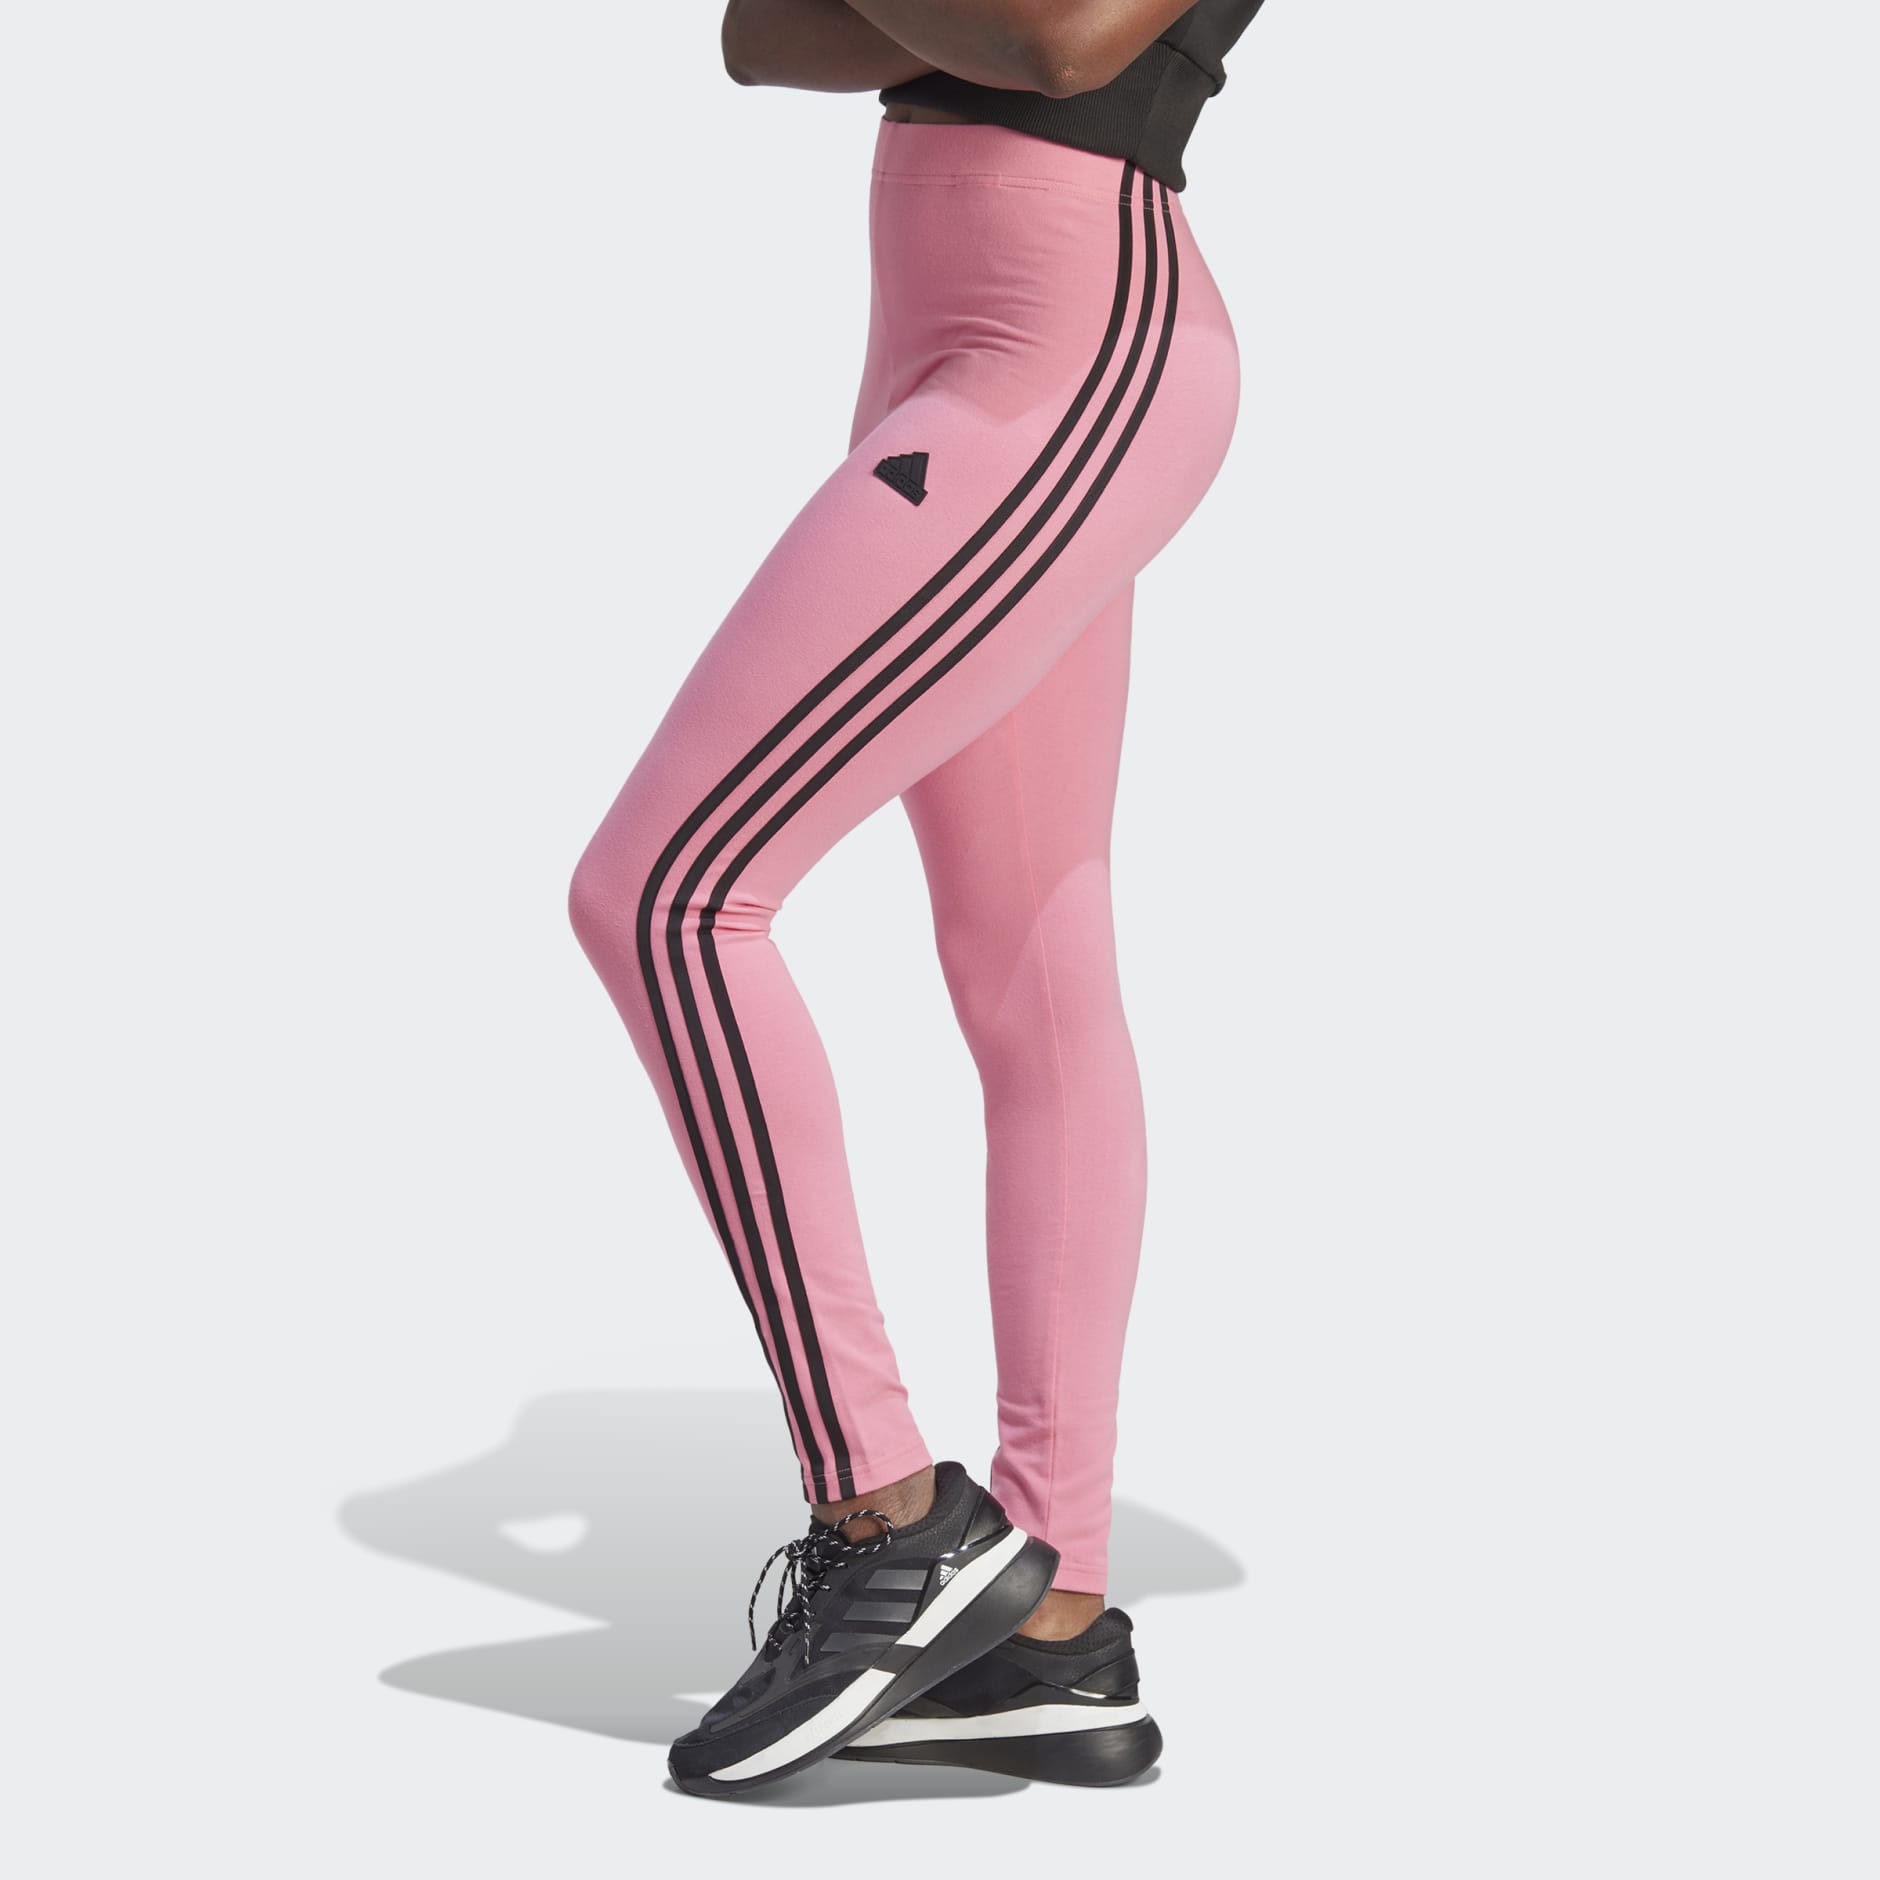 adidas Originals Adibreak 3 Stripes Legging | Outfits with leggings, Adidas  leggings outfit, Women leggings outfits